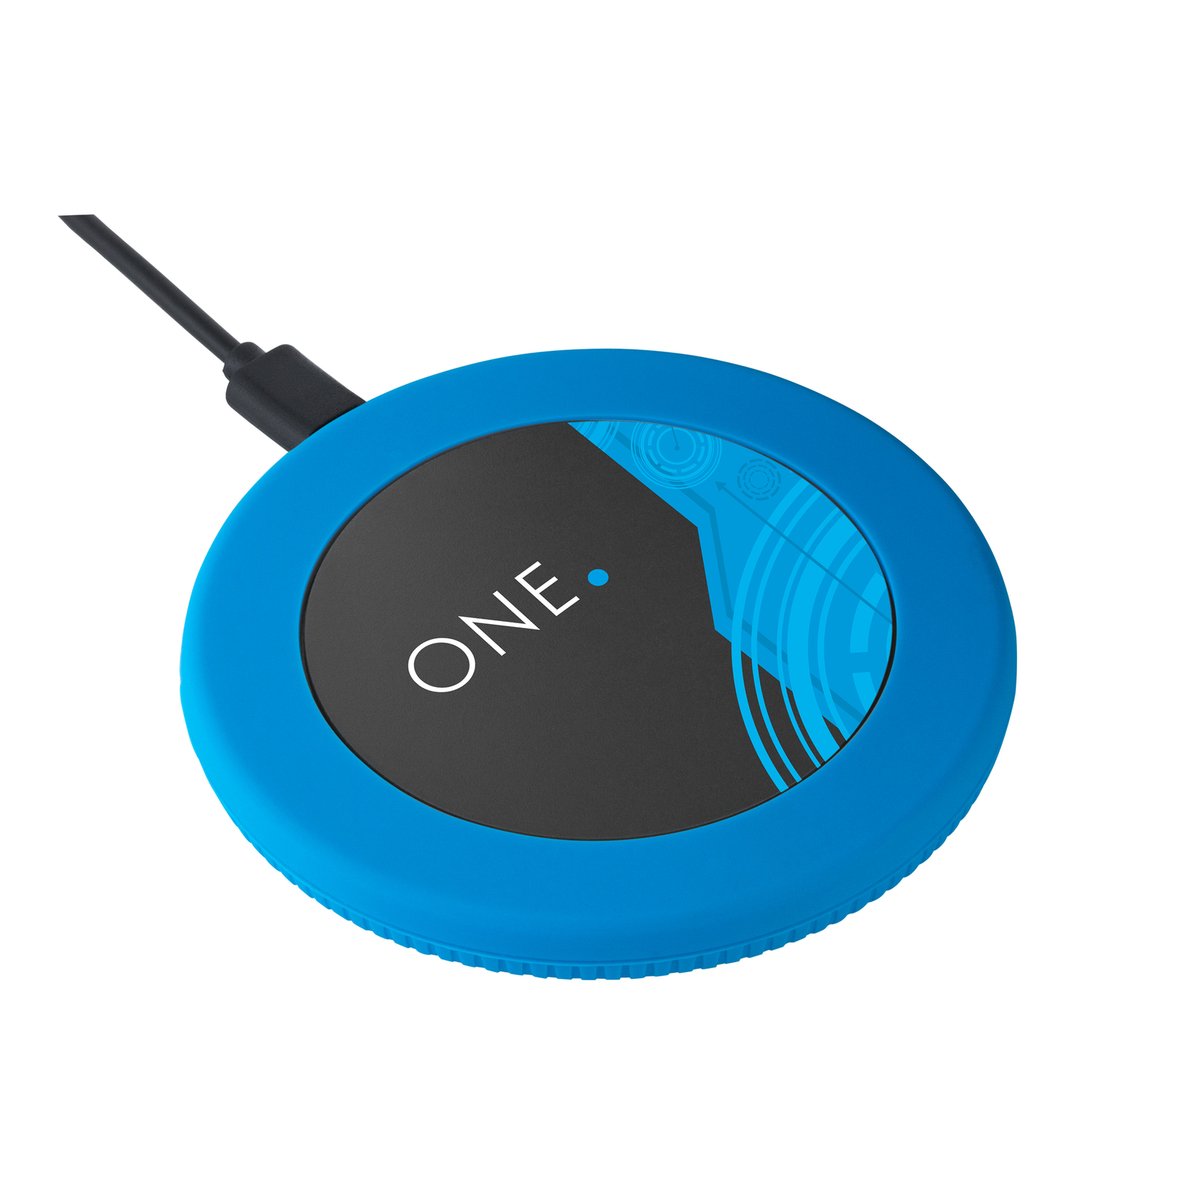 Wireless Charger REEVES-myMatola "one" schwarz/blau 15 Watt veredeltes Muster